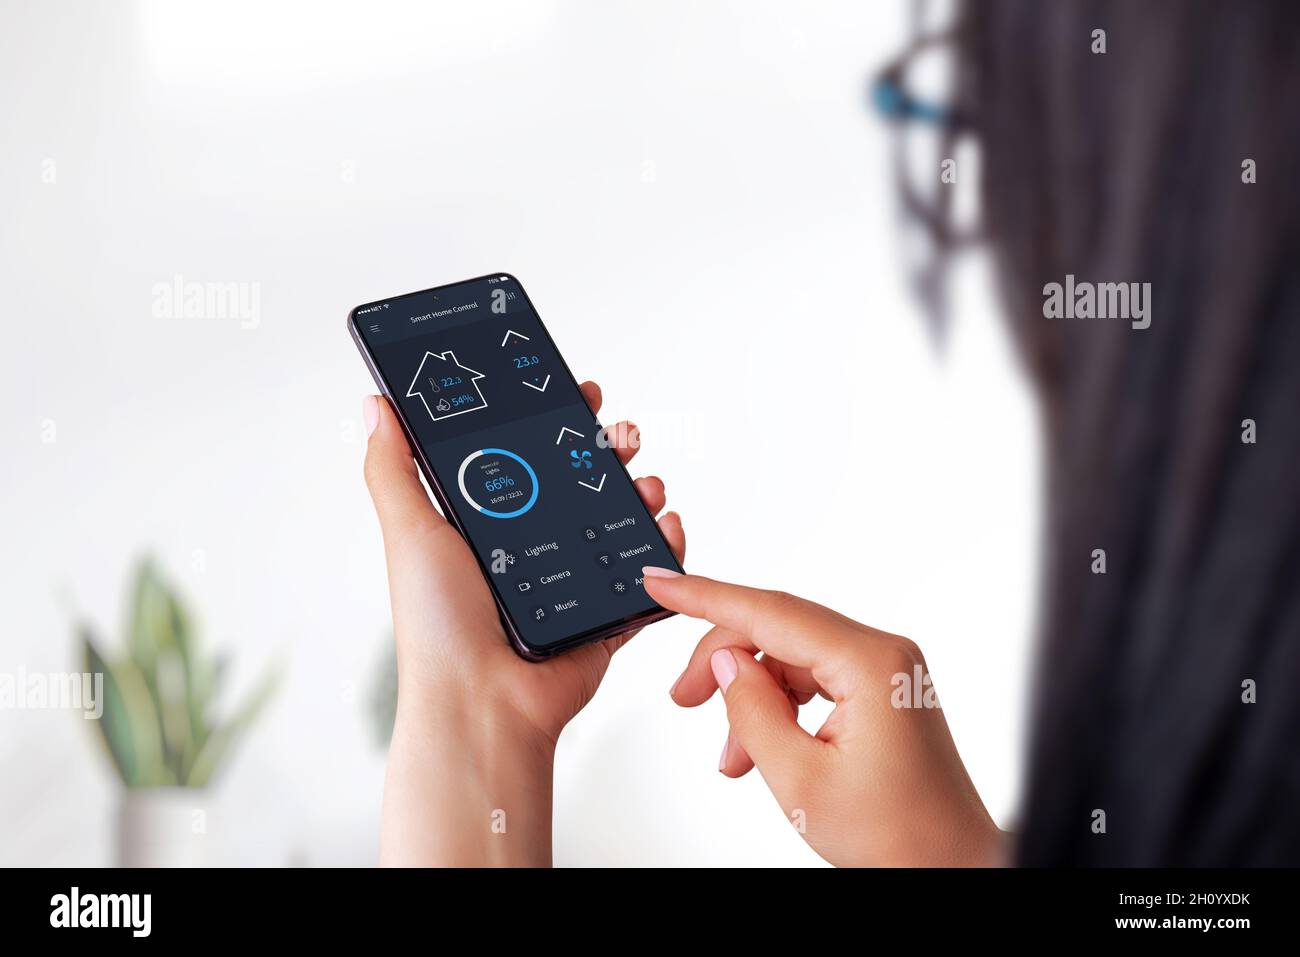 Concept de l'application Smart Home sur smartphone entre les mains des femmes.Intérieur de la maison en arrière-plan Banque D'Images